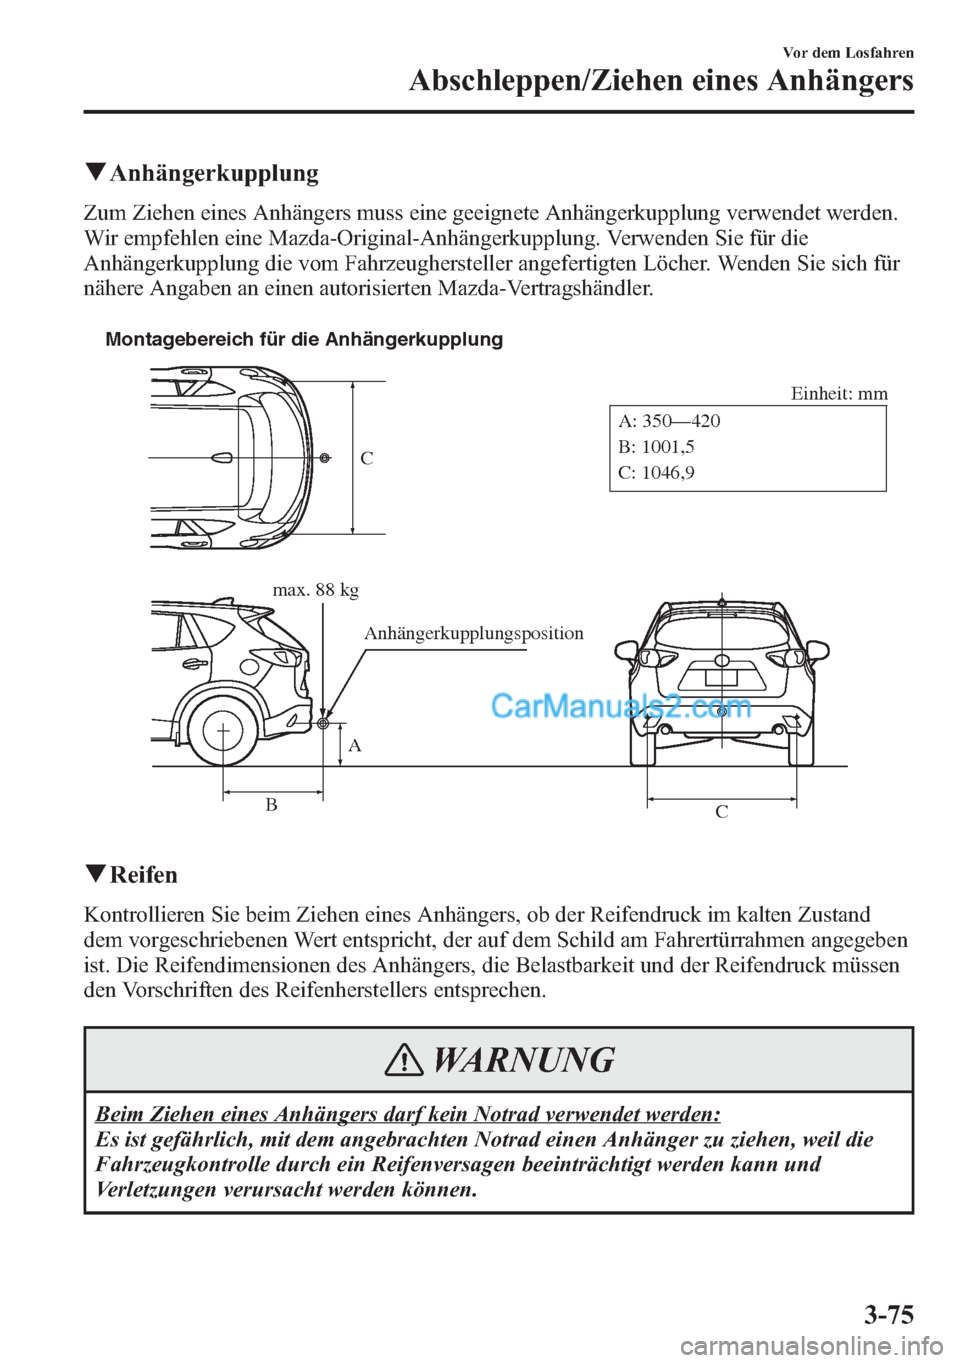 MAZDA MODEL CX-5 2015  Betriebsanleitung (in German) qAnhängerkupplung
Zum Ziehen eines Anhängers muss eine geeignete Anhängerkupplung verwendet werden.
Wir empfehlen eine Mazda-Original-Anhängerkupplung. Verwenden Sie für die
Anhängerkupplung die